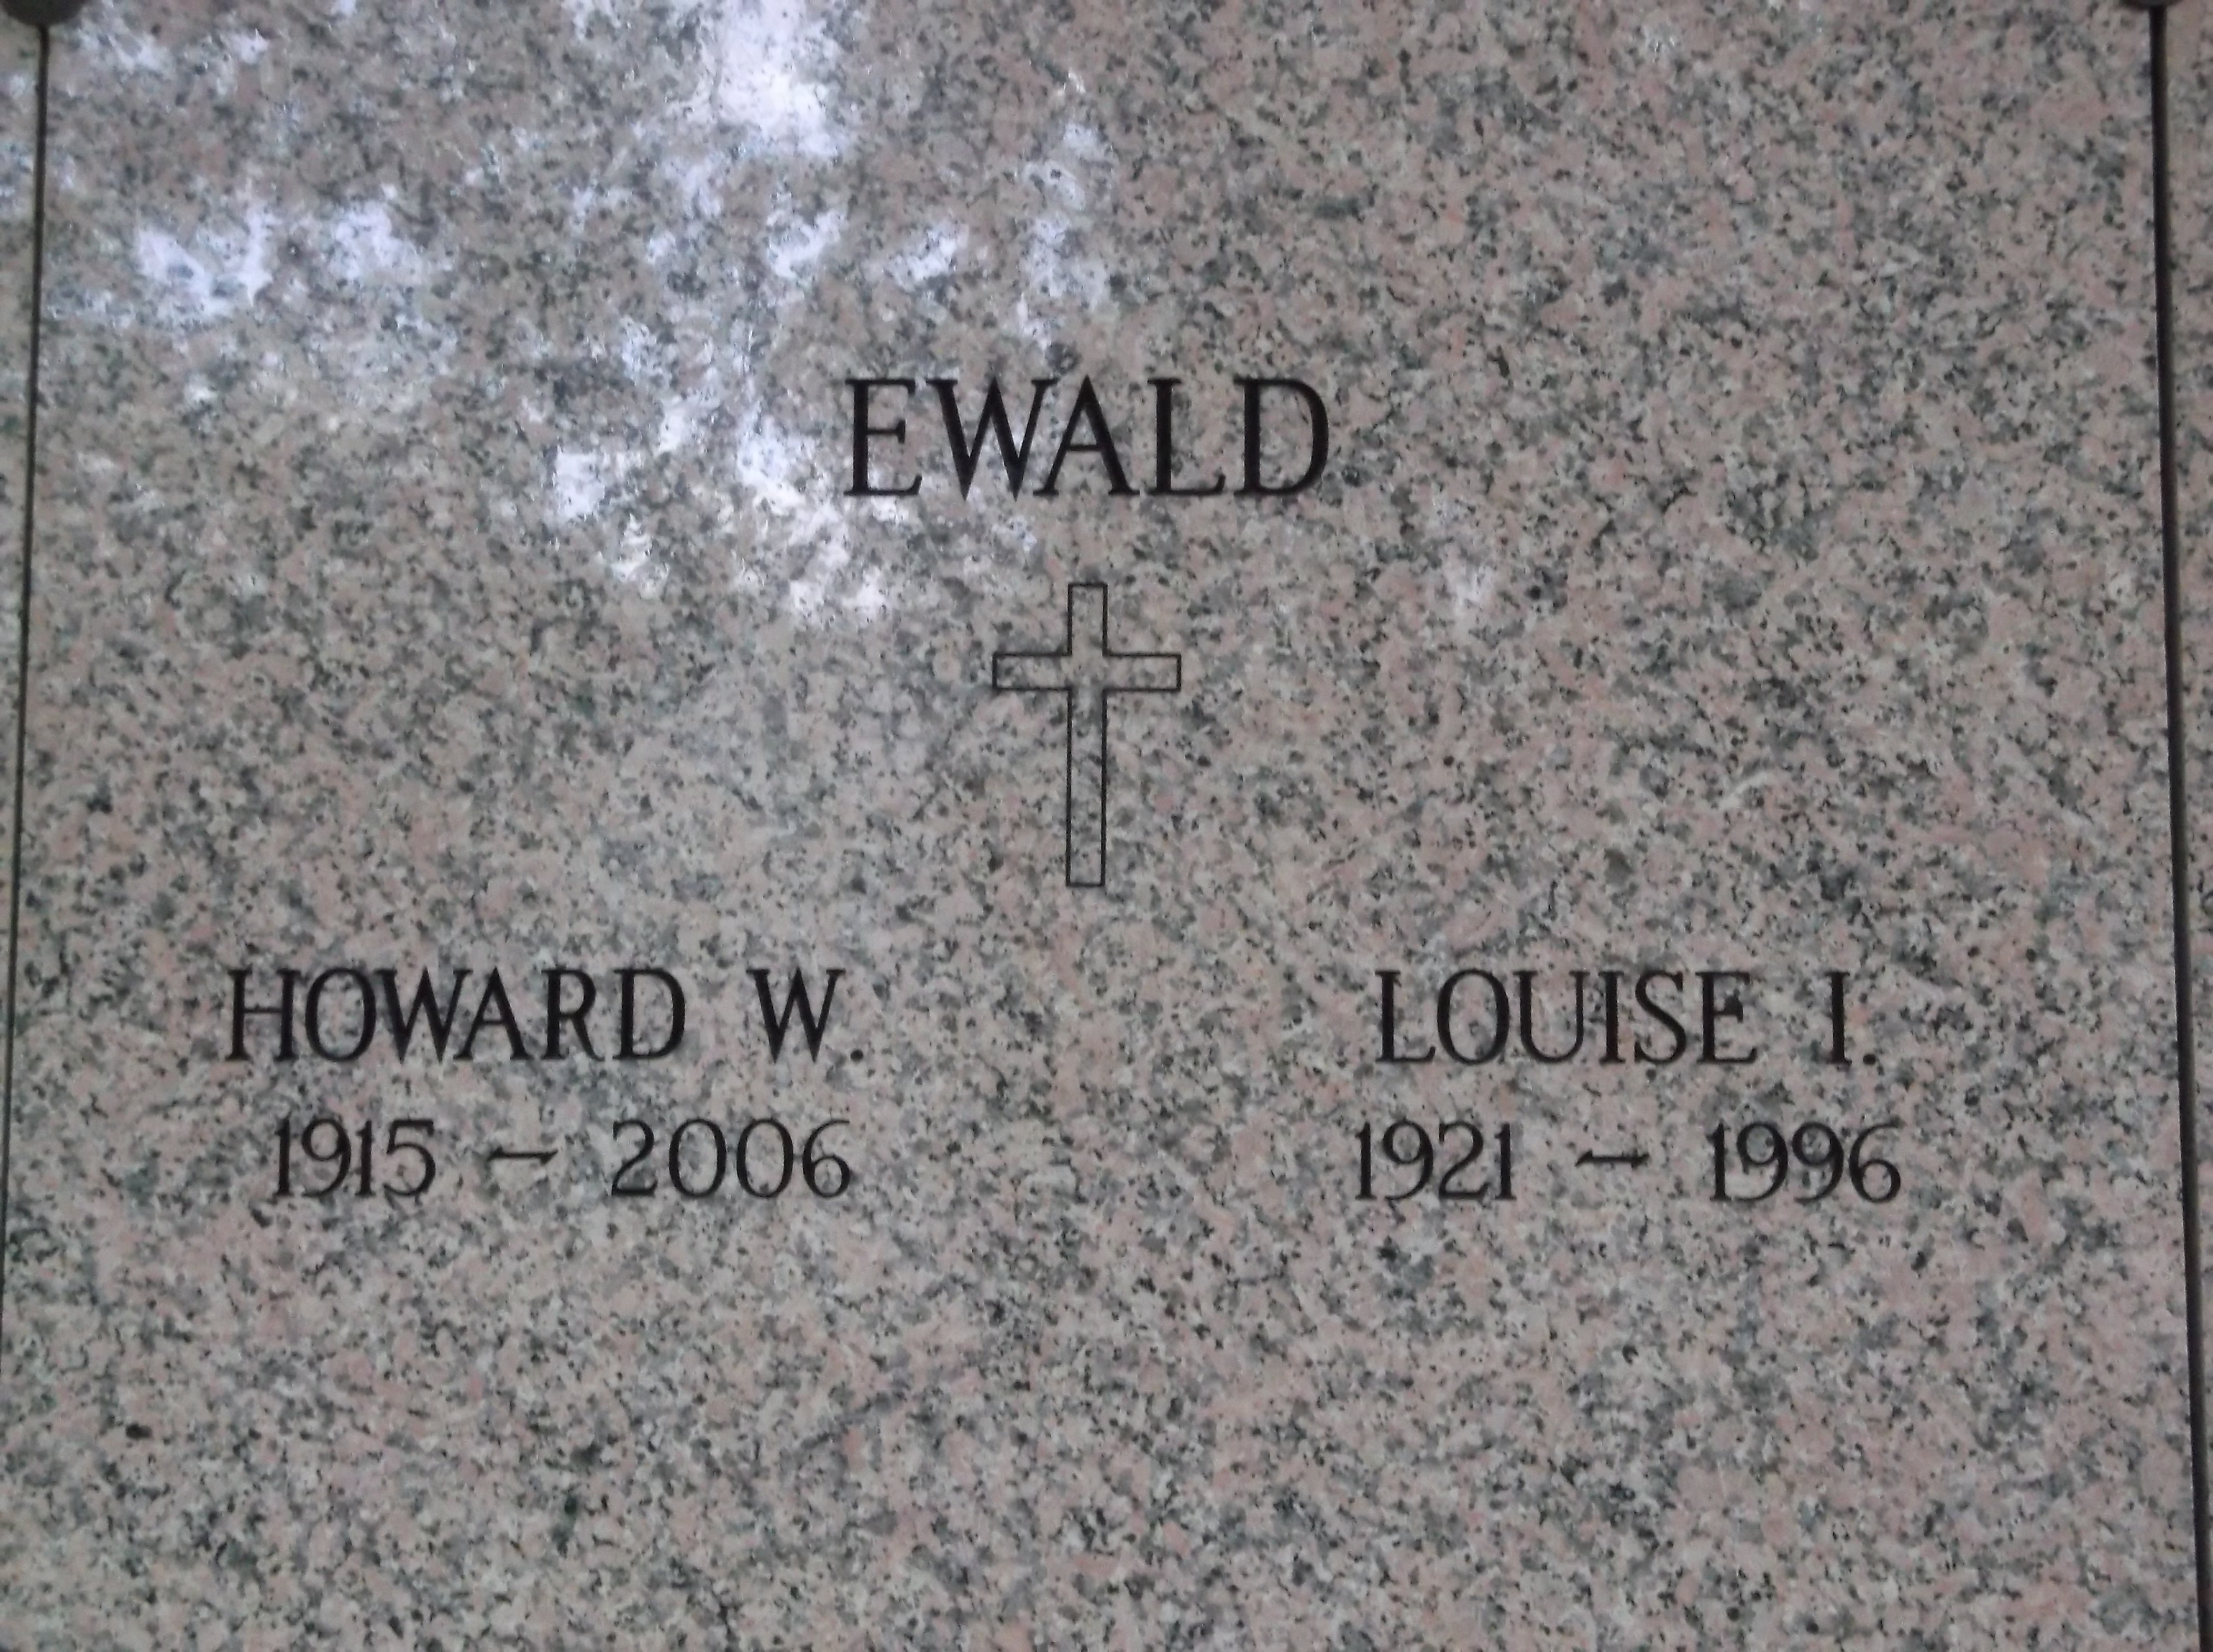 Louise I Ewald